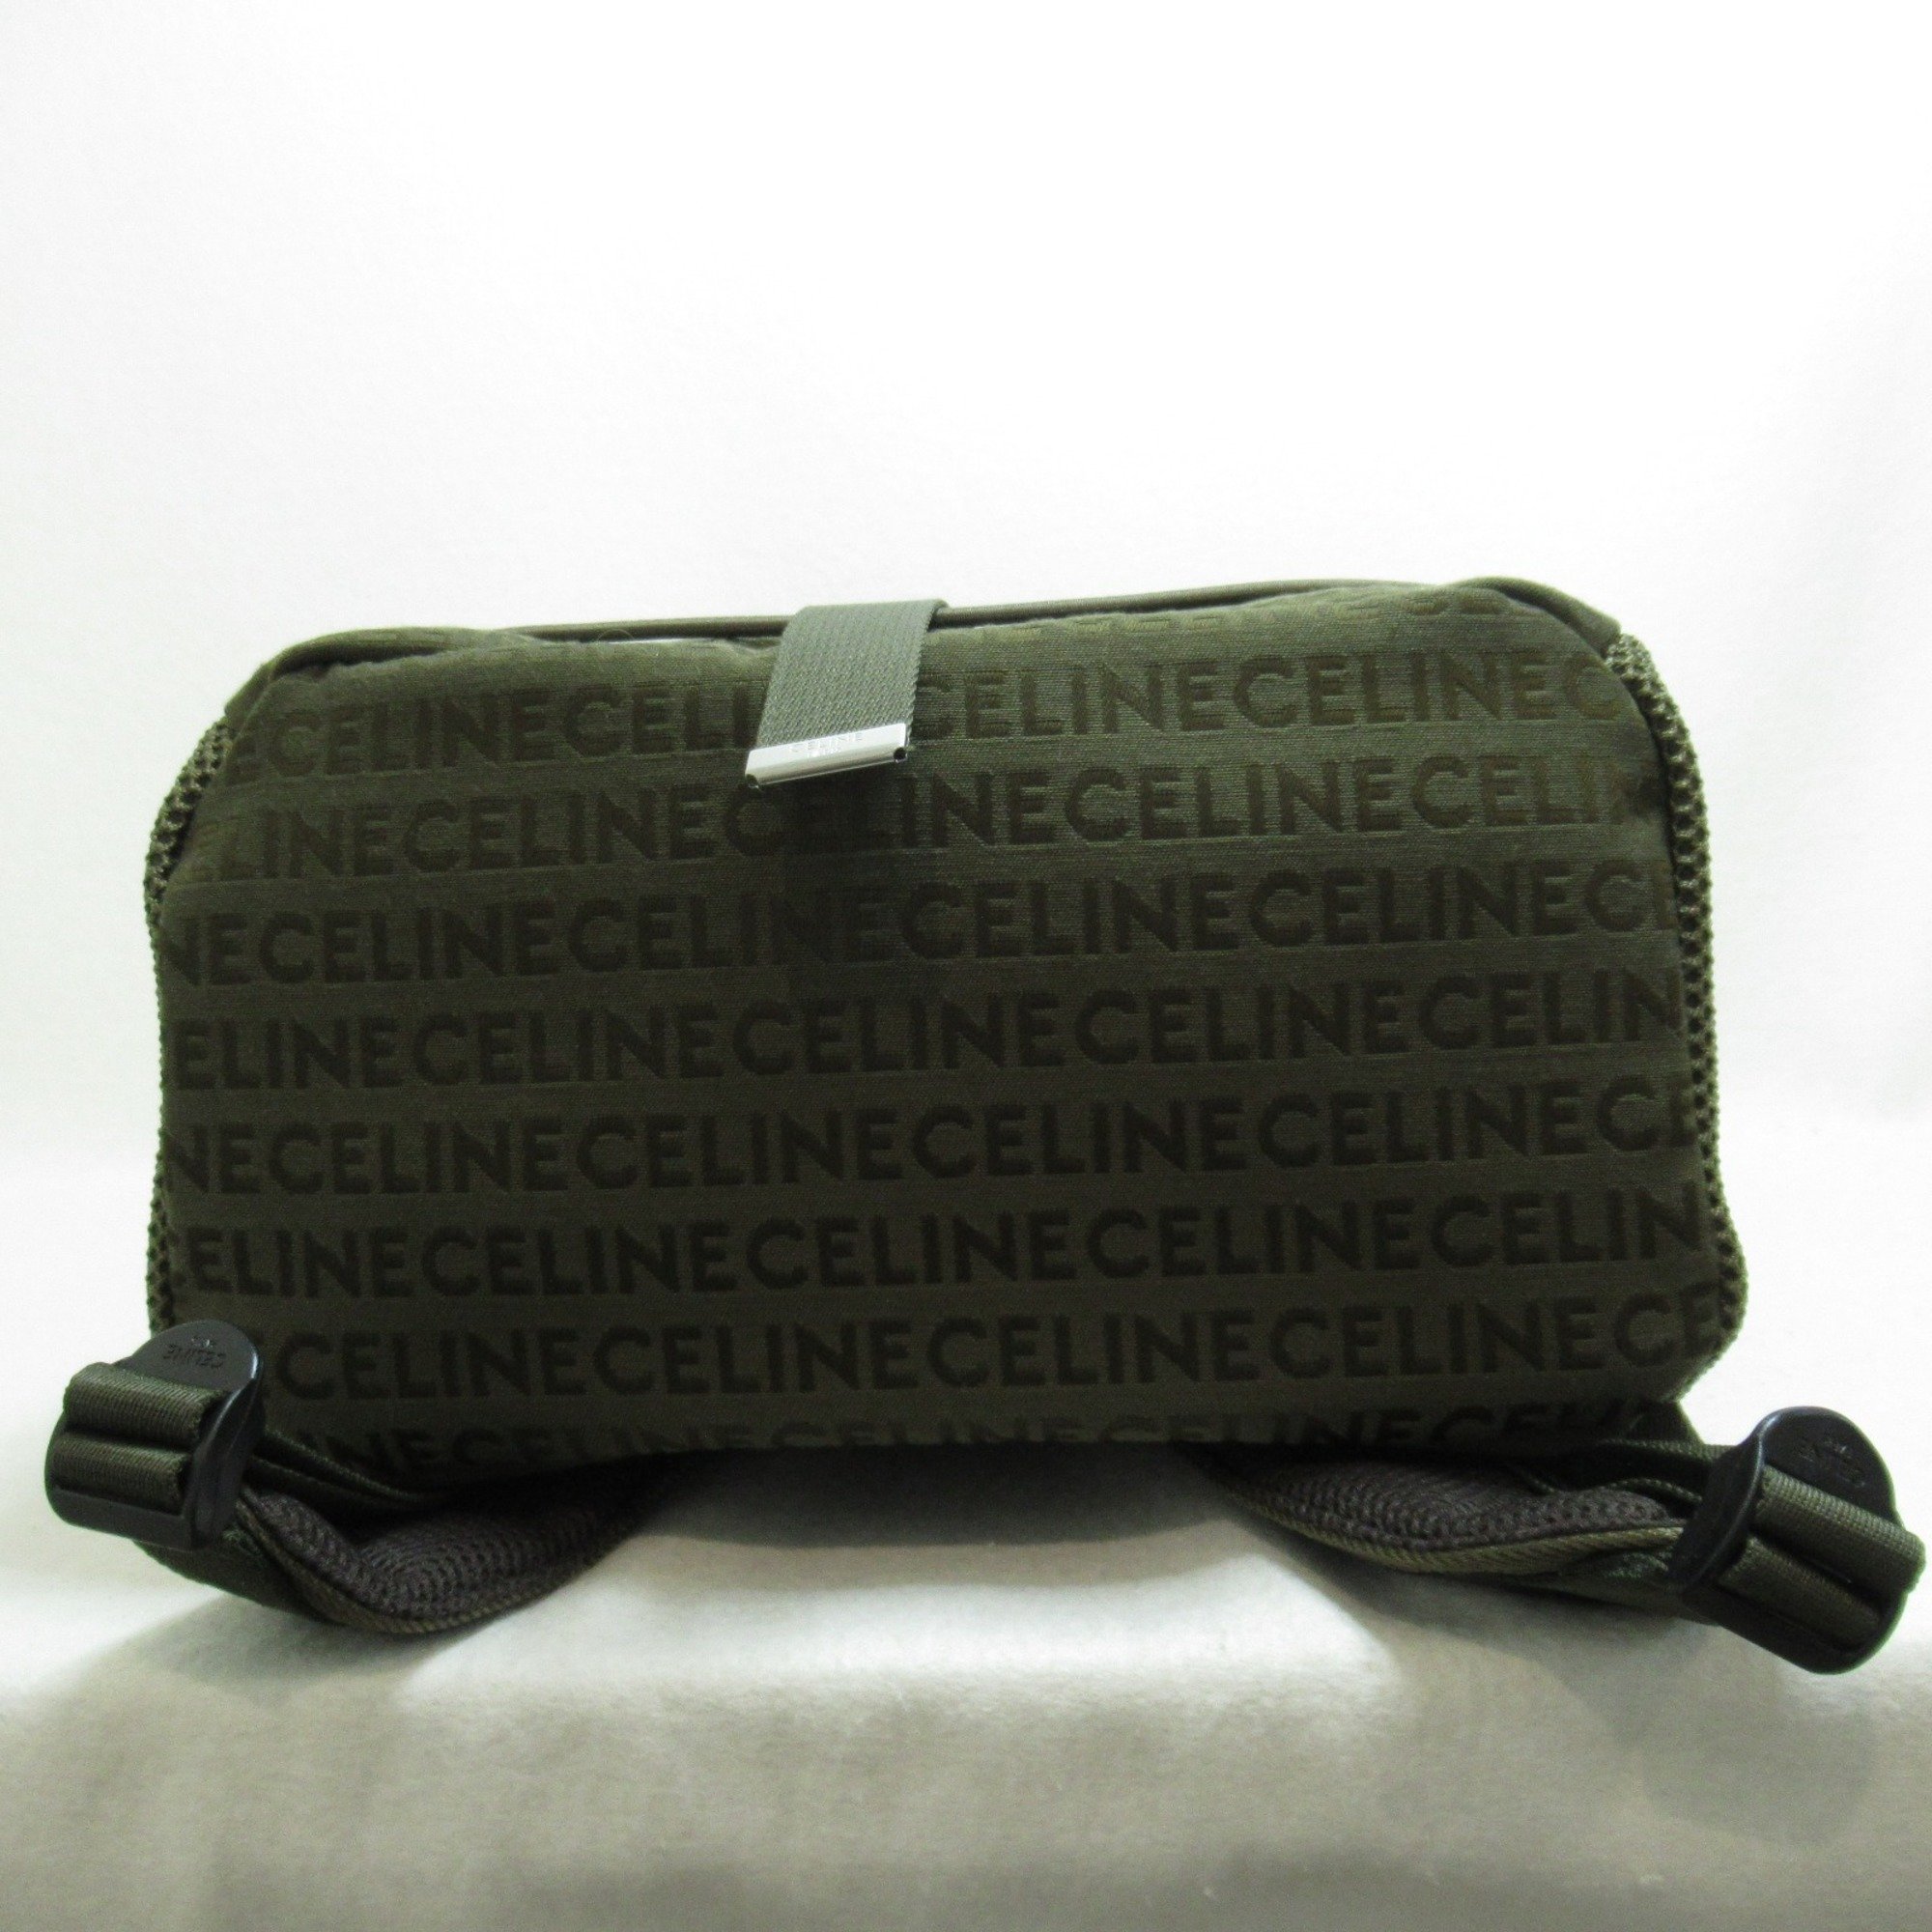 CELINE Medium Tracking Backpack Khaki Nylon 1984615KH